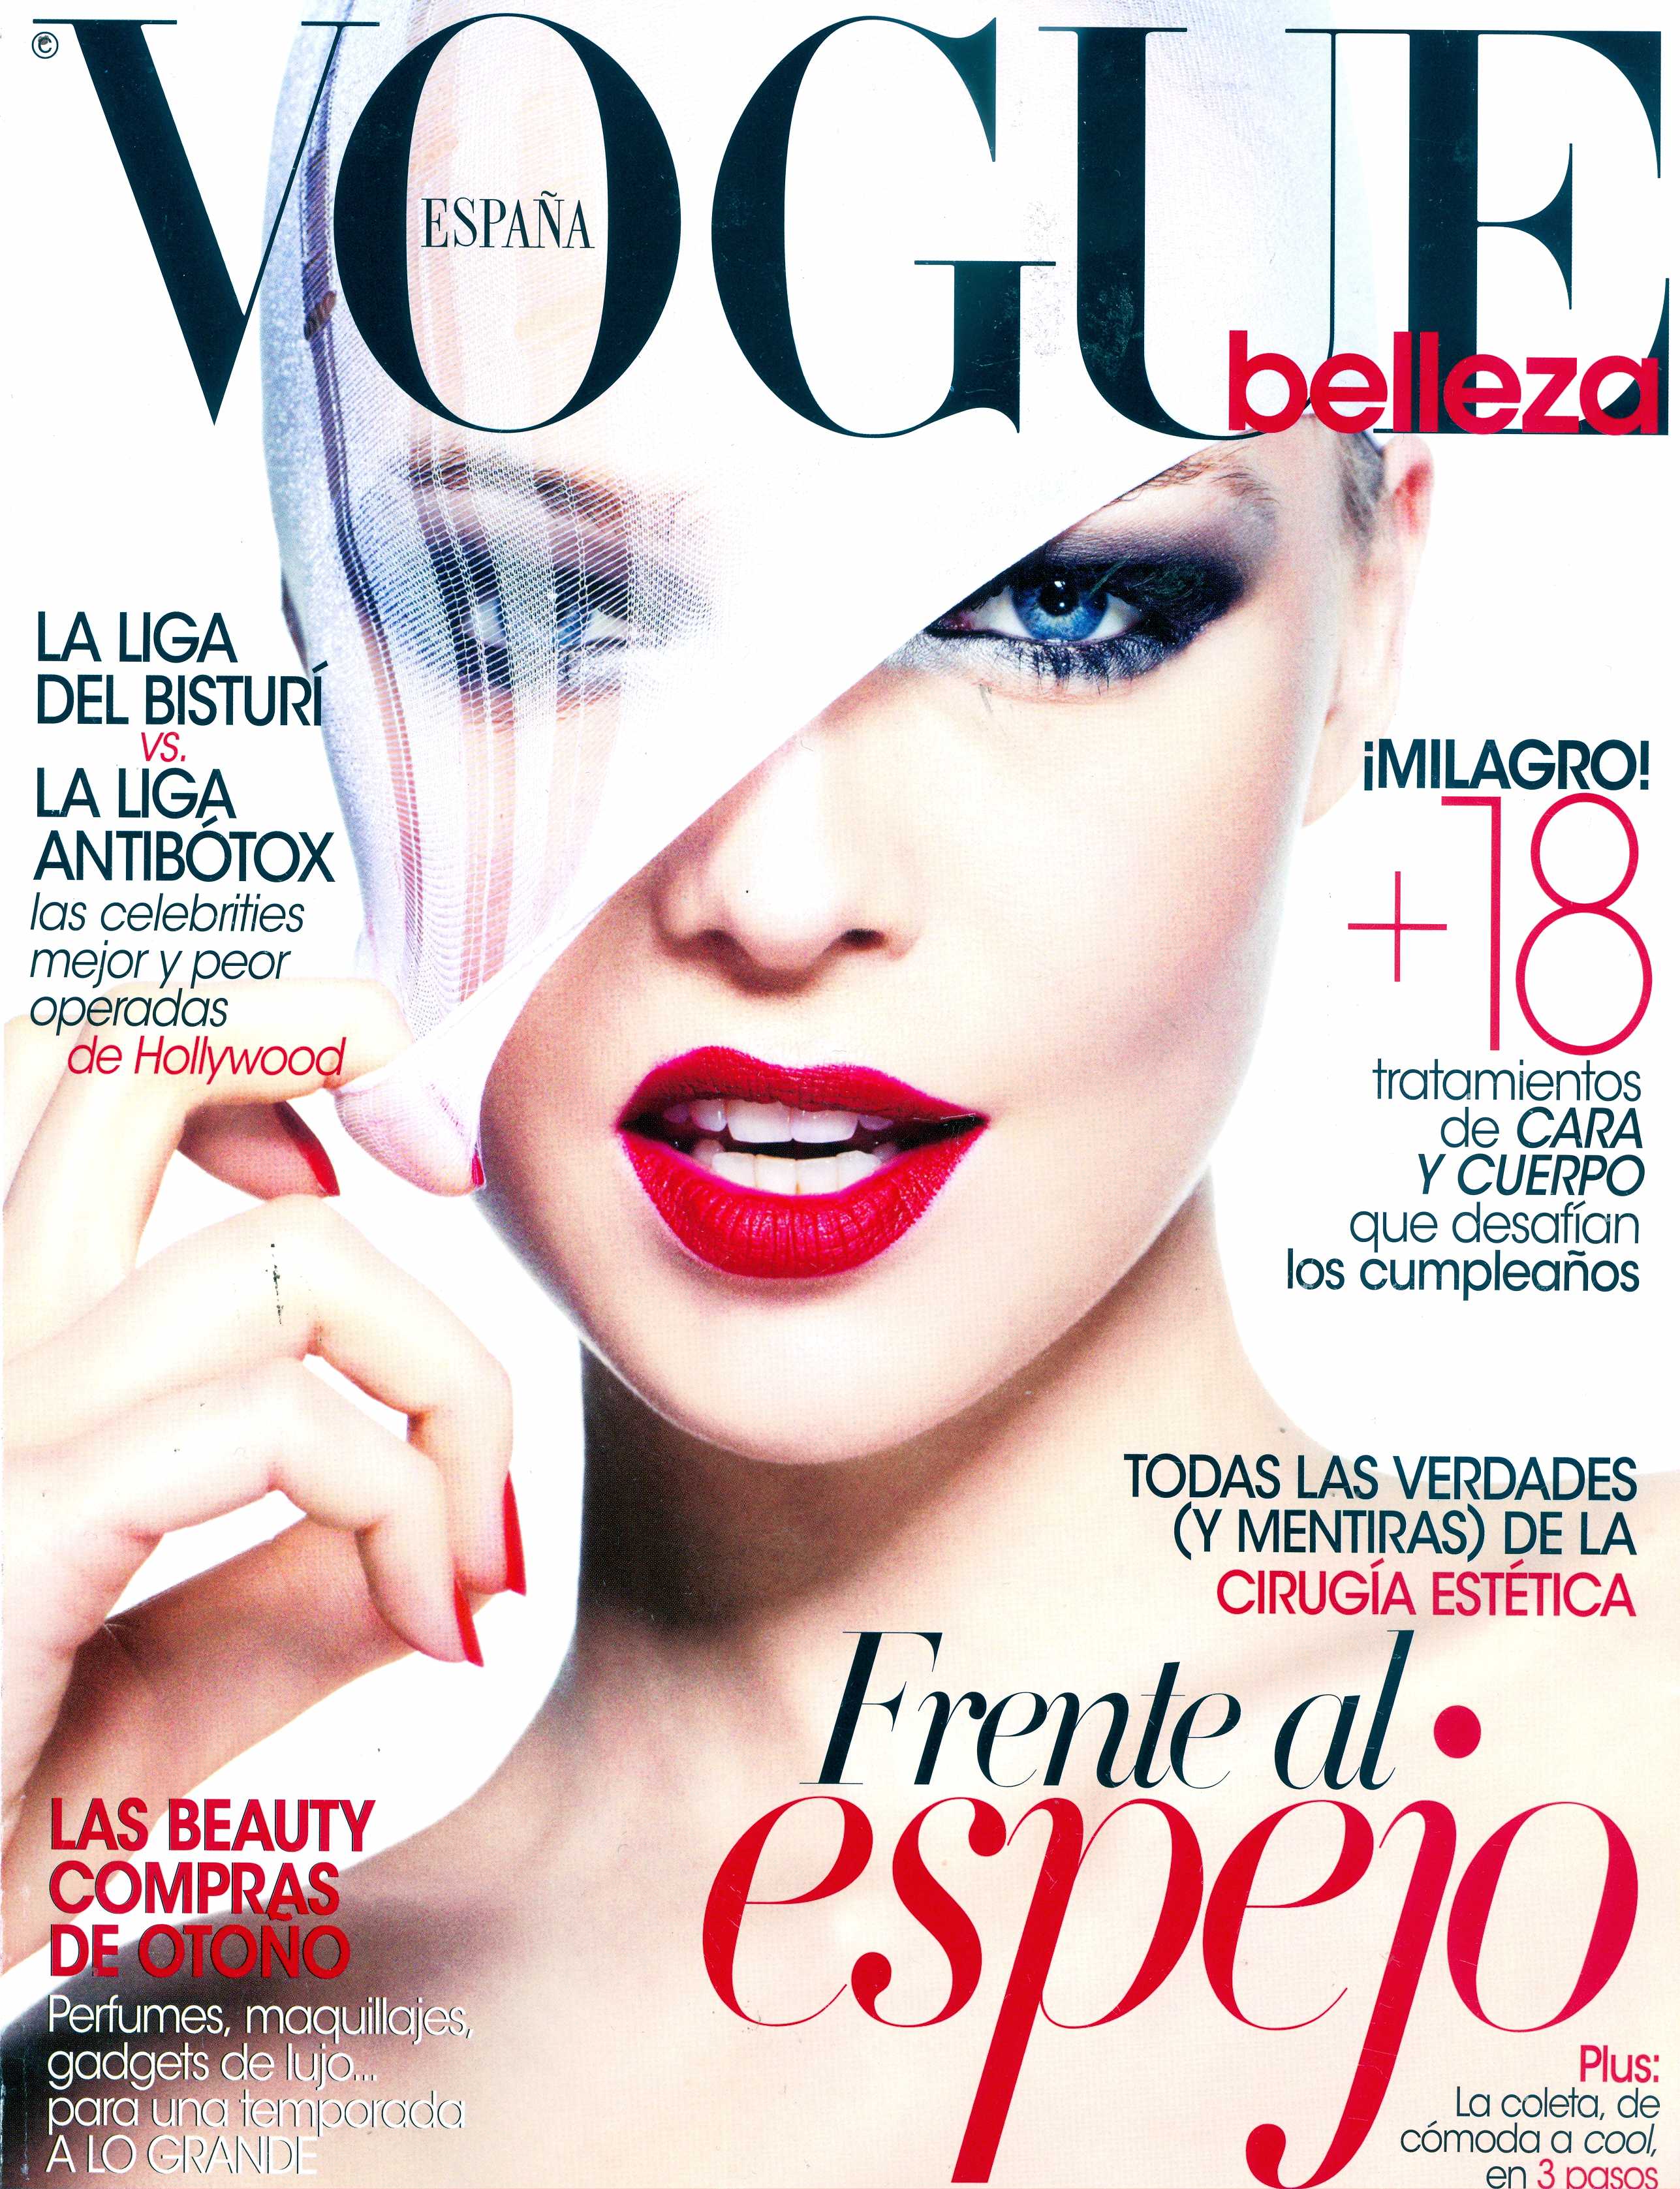 TodoenBelleza en la revista Vogue - TodoenBelleza.es